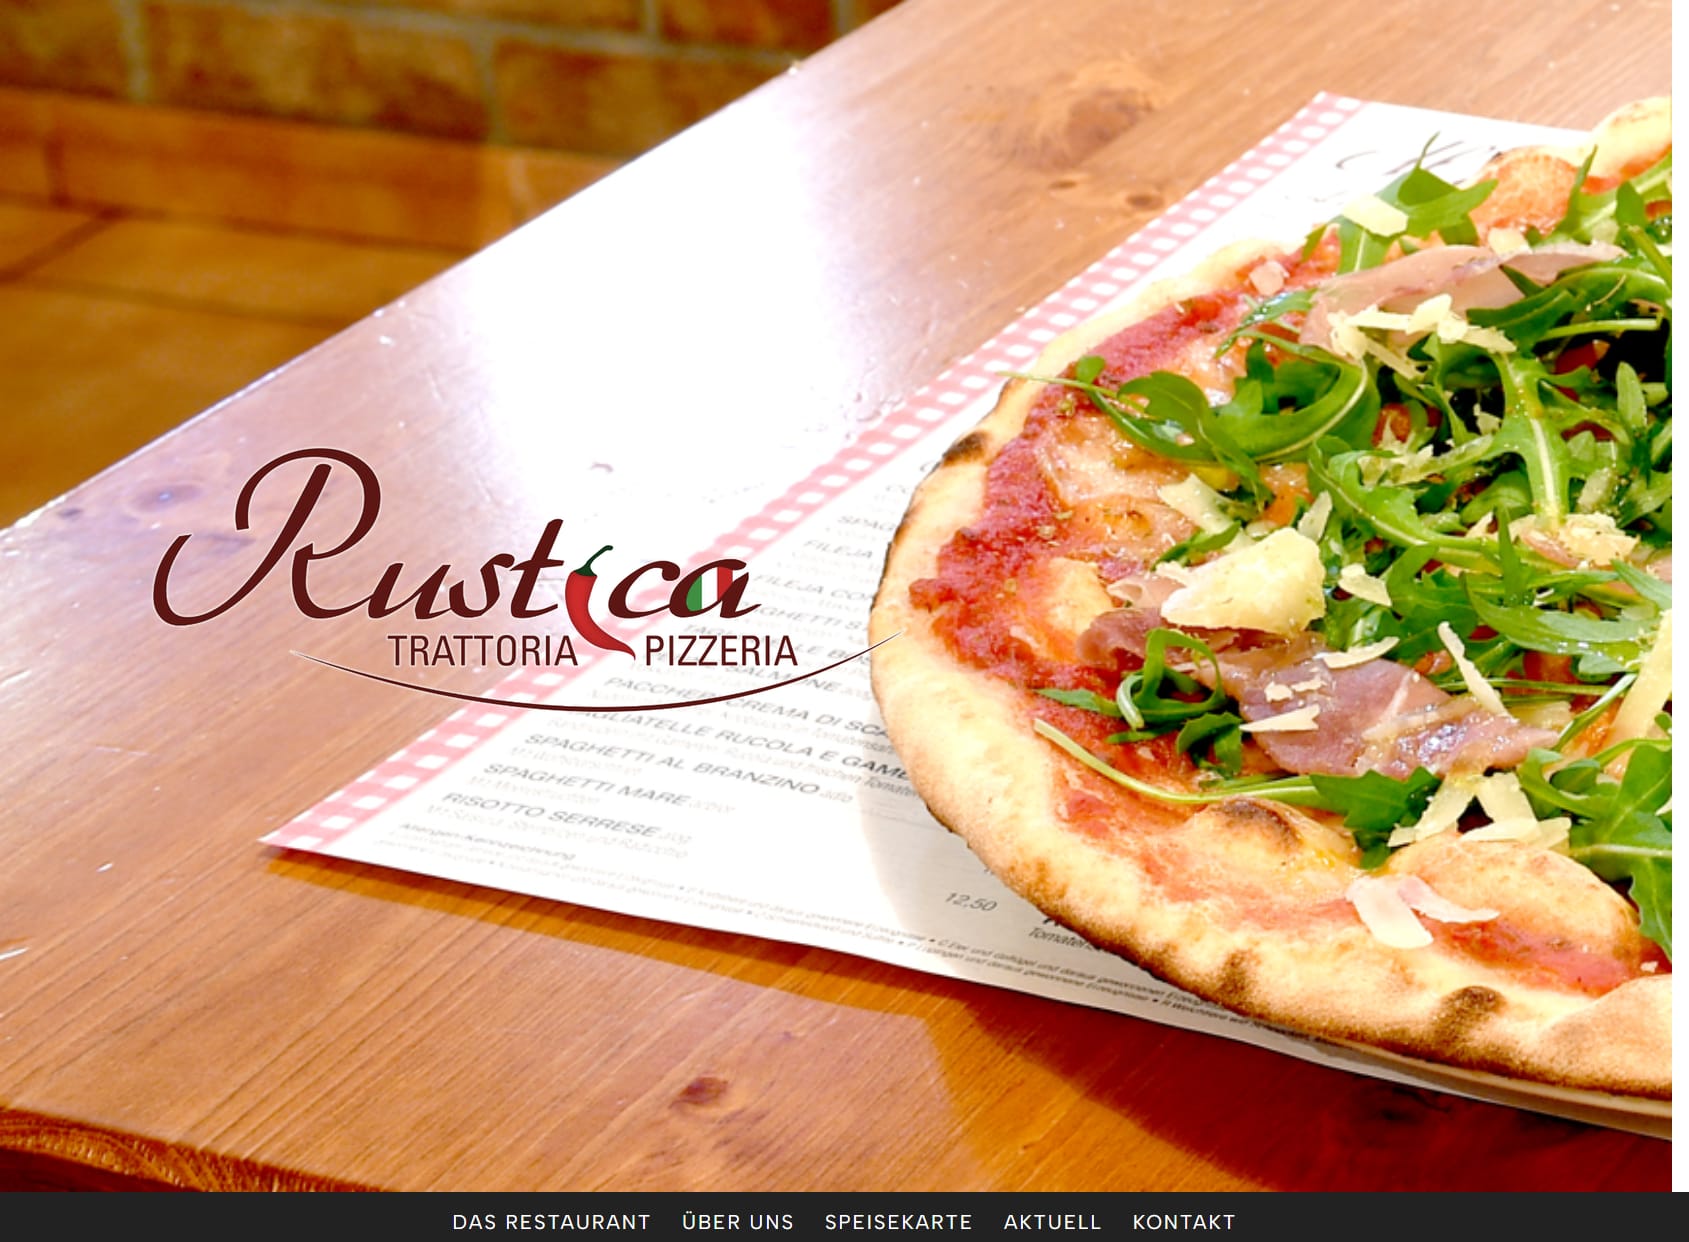 Rustica Trattoria - Pizzeria